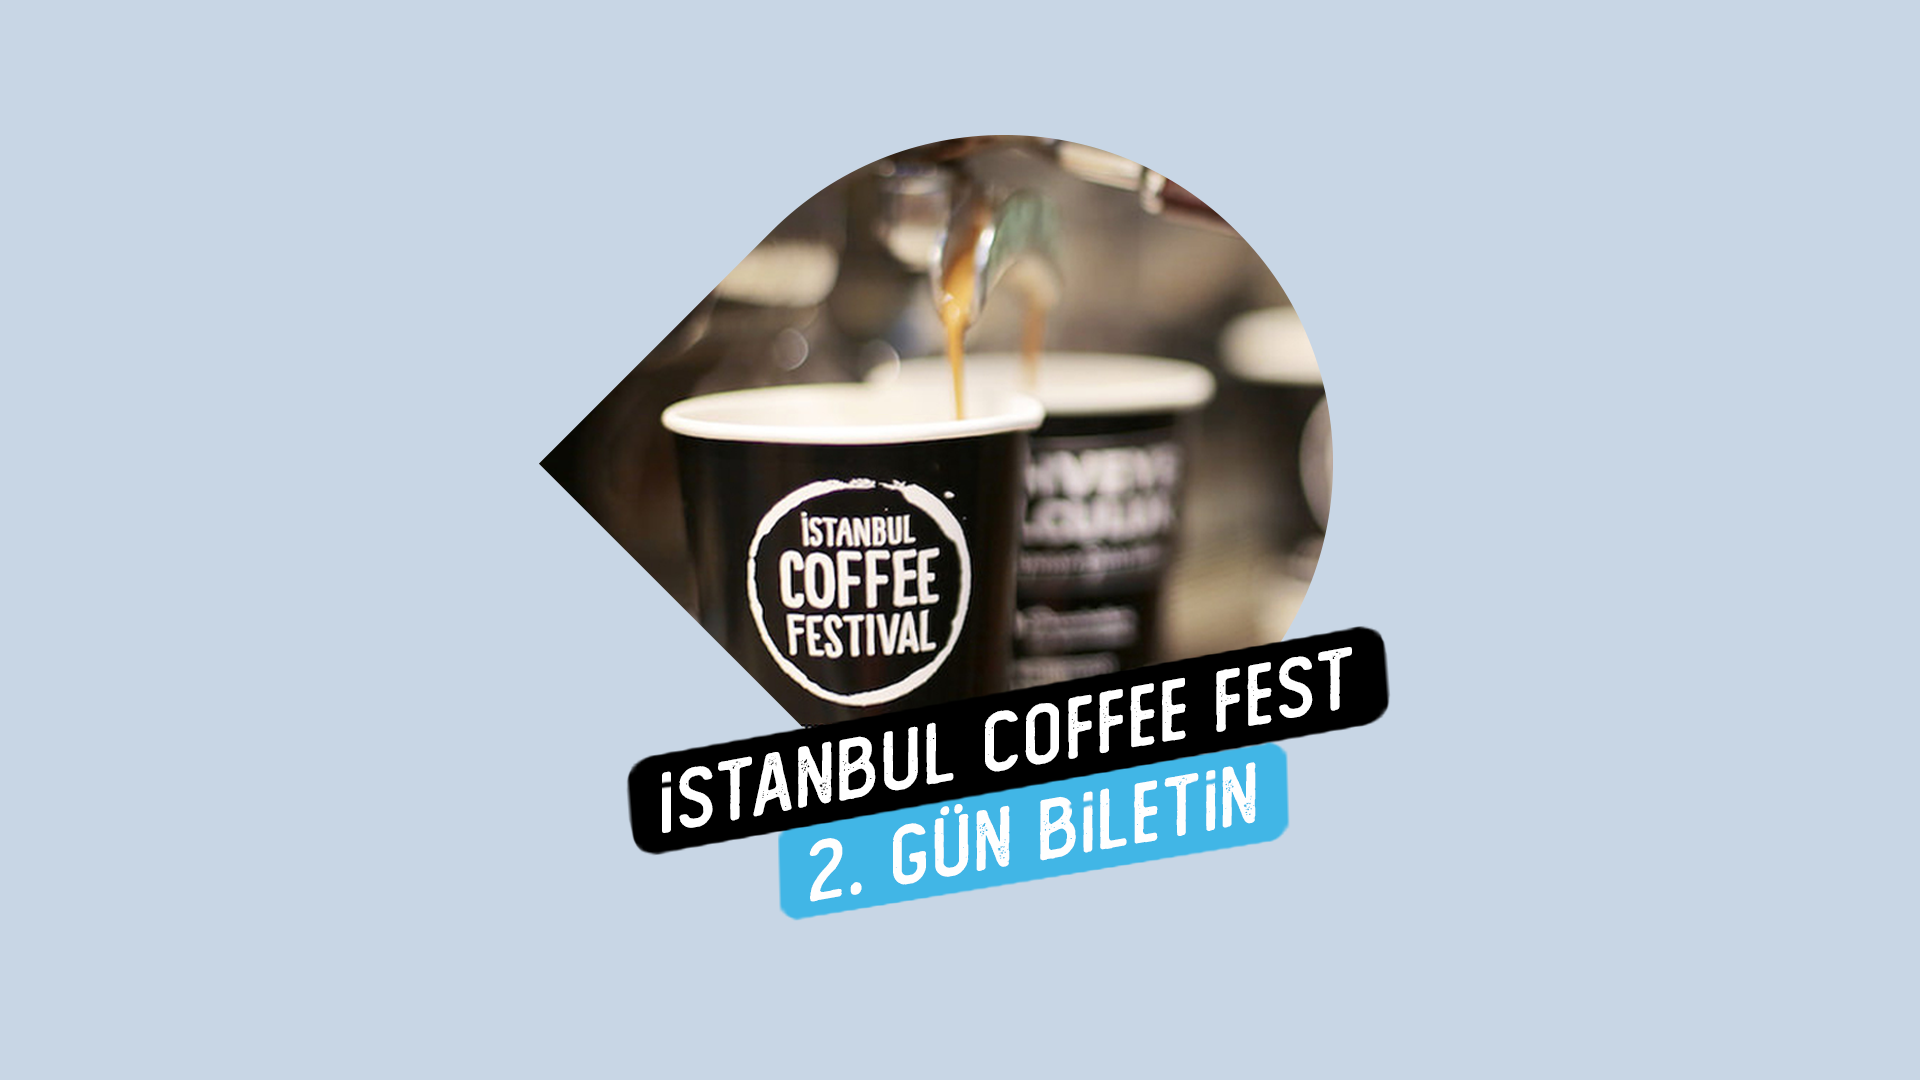 BILET Token Kilitle, İstanbul Coffee Festivali 2. Gün Katılım Biletine hemen sahip ol!